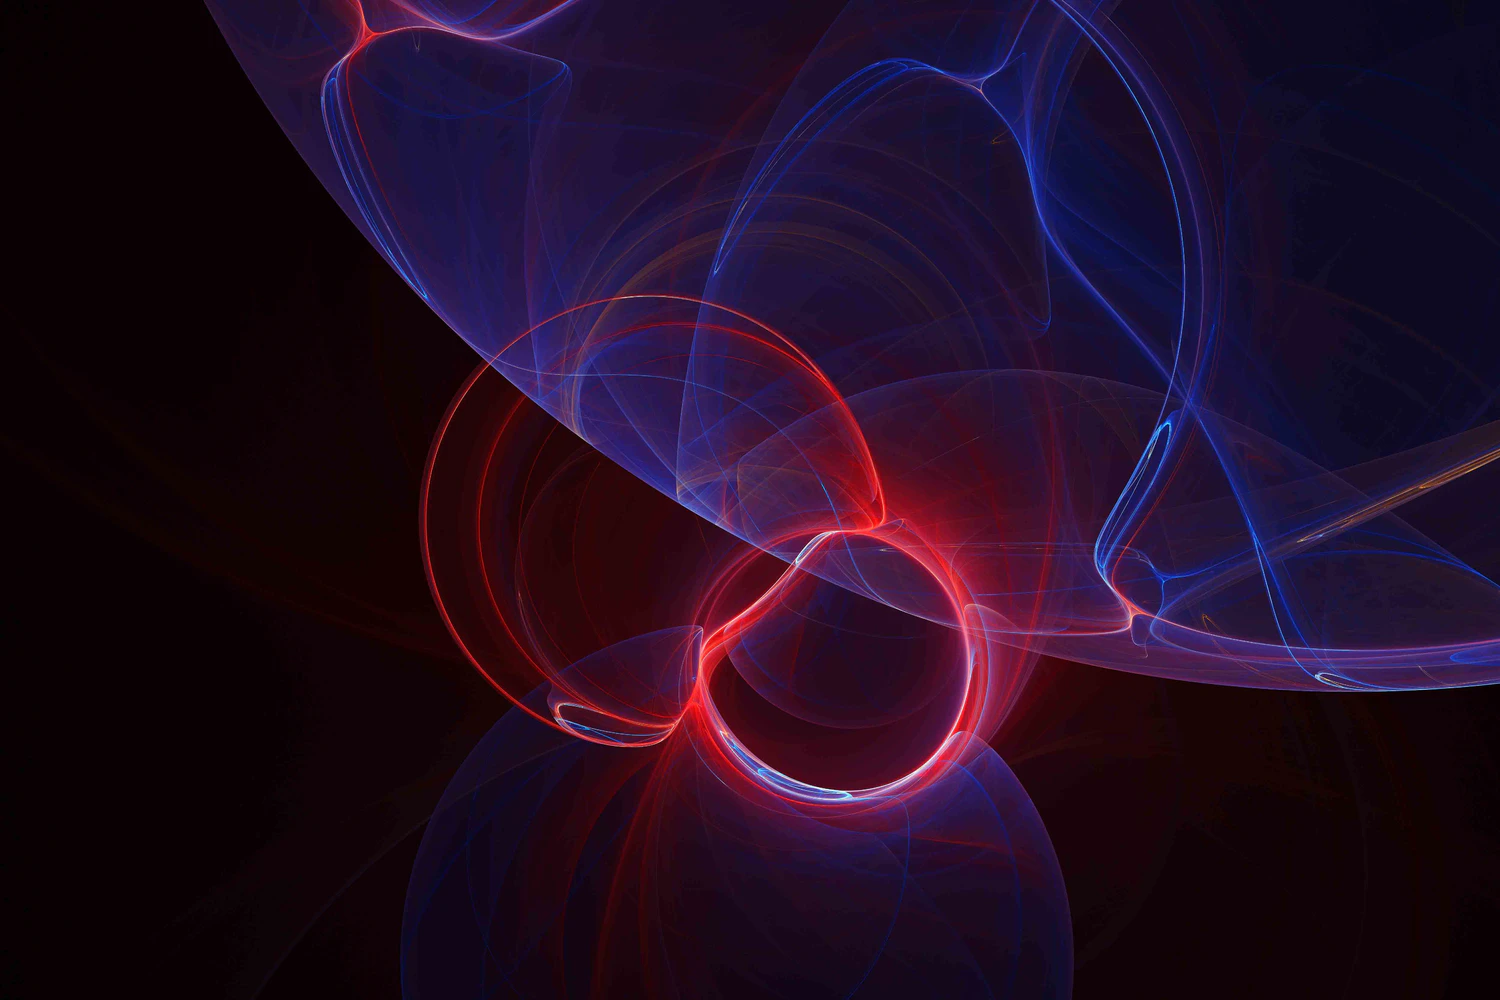 3703 10款未来科幻炫彩激光霓虹灯光影光晕抽象分形艺术背景底纹图片设计素材 Neon Glow – Light Effect Backgrounds